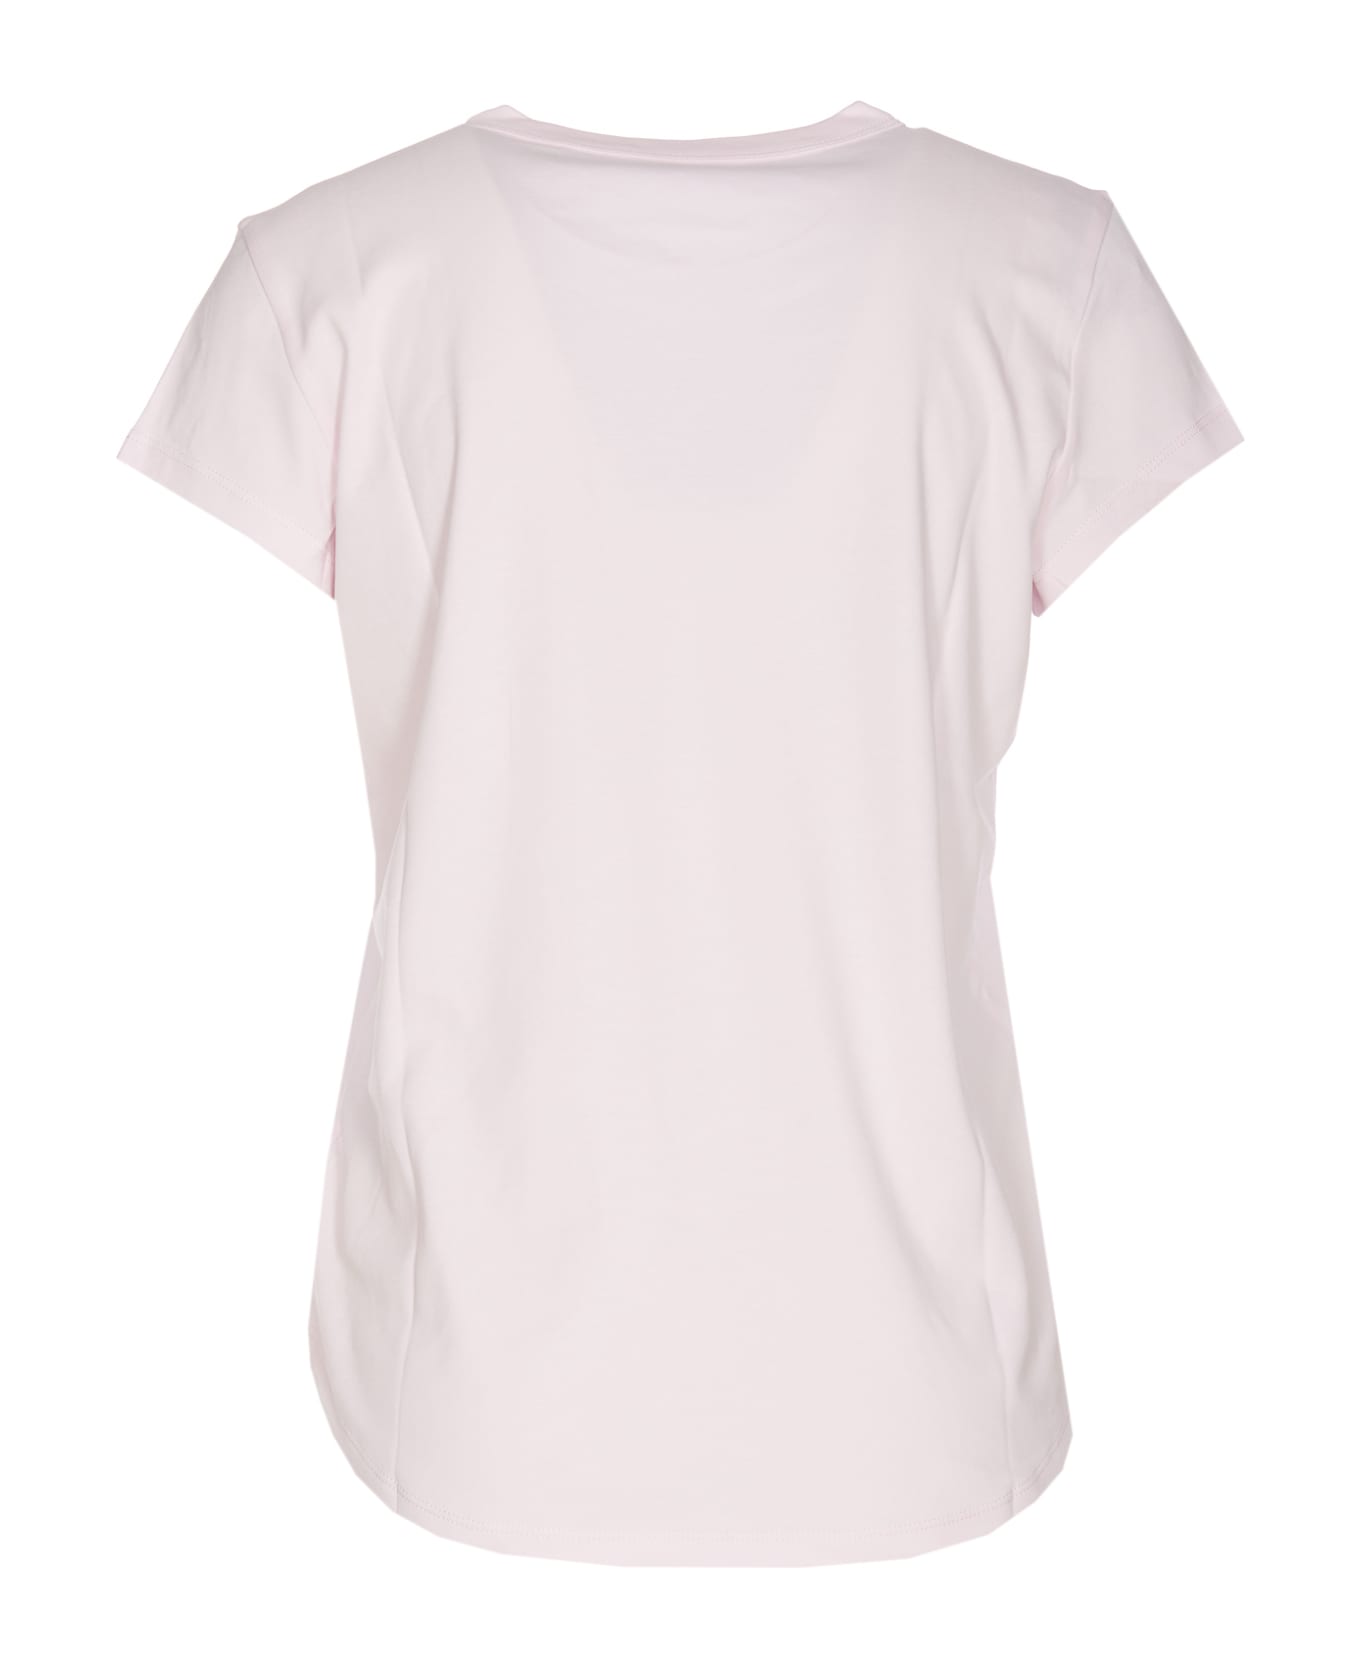 Zadig & Voltaire Woop T-shirt - Pink Tシャツ